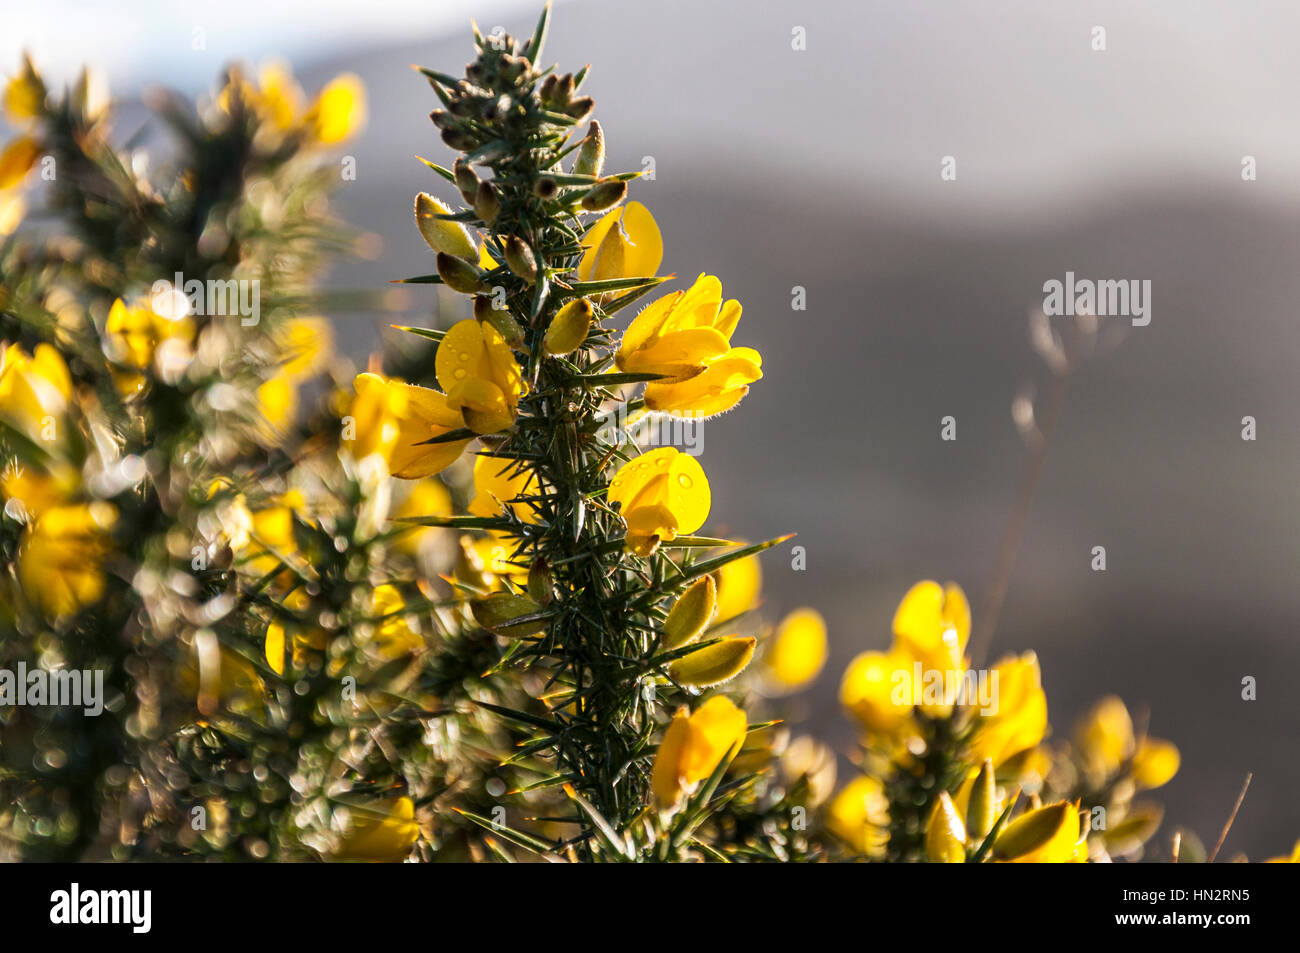 La floraison des plantes bush ajoncs Ulex europaeus avec fleurs jaune vif Banque D'Images